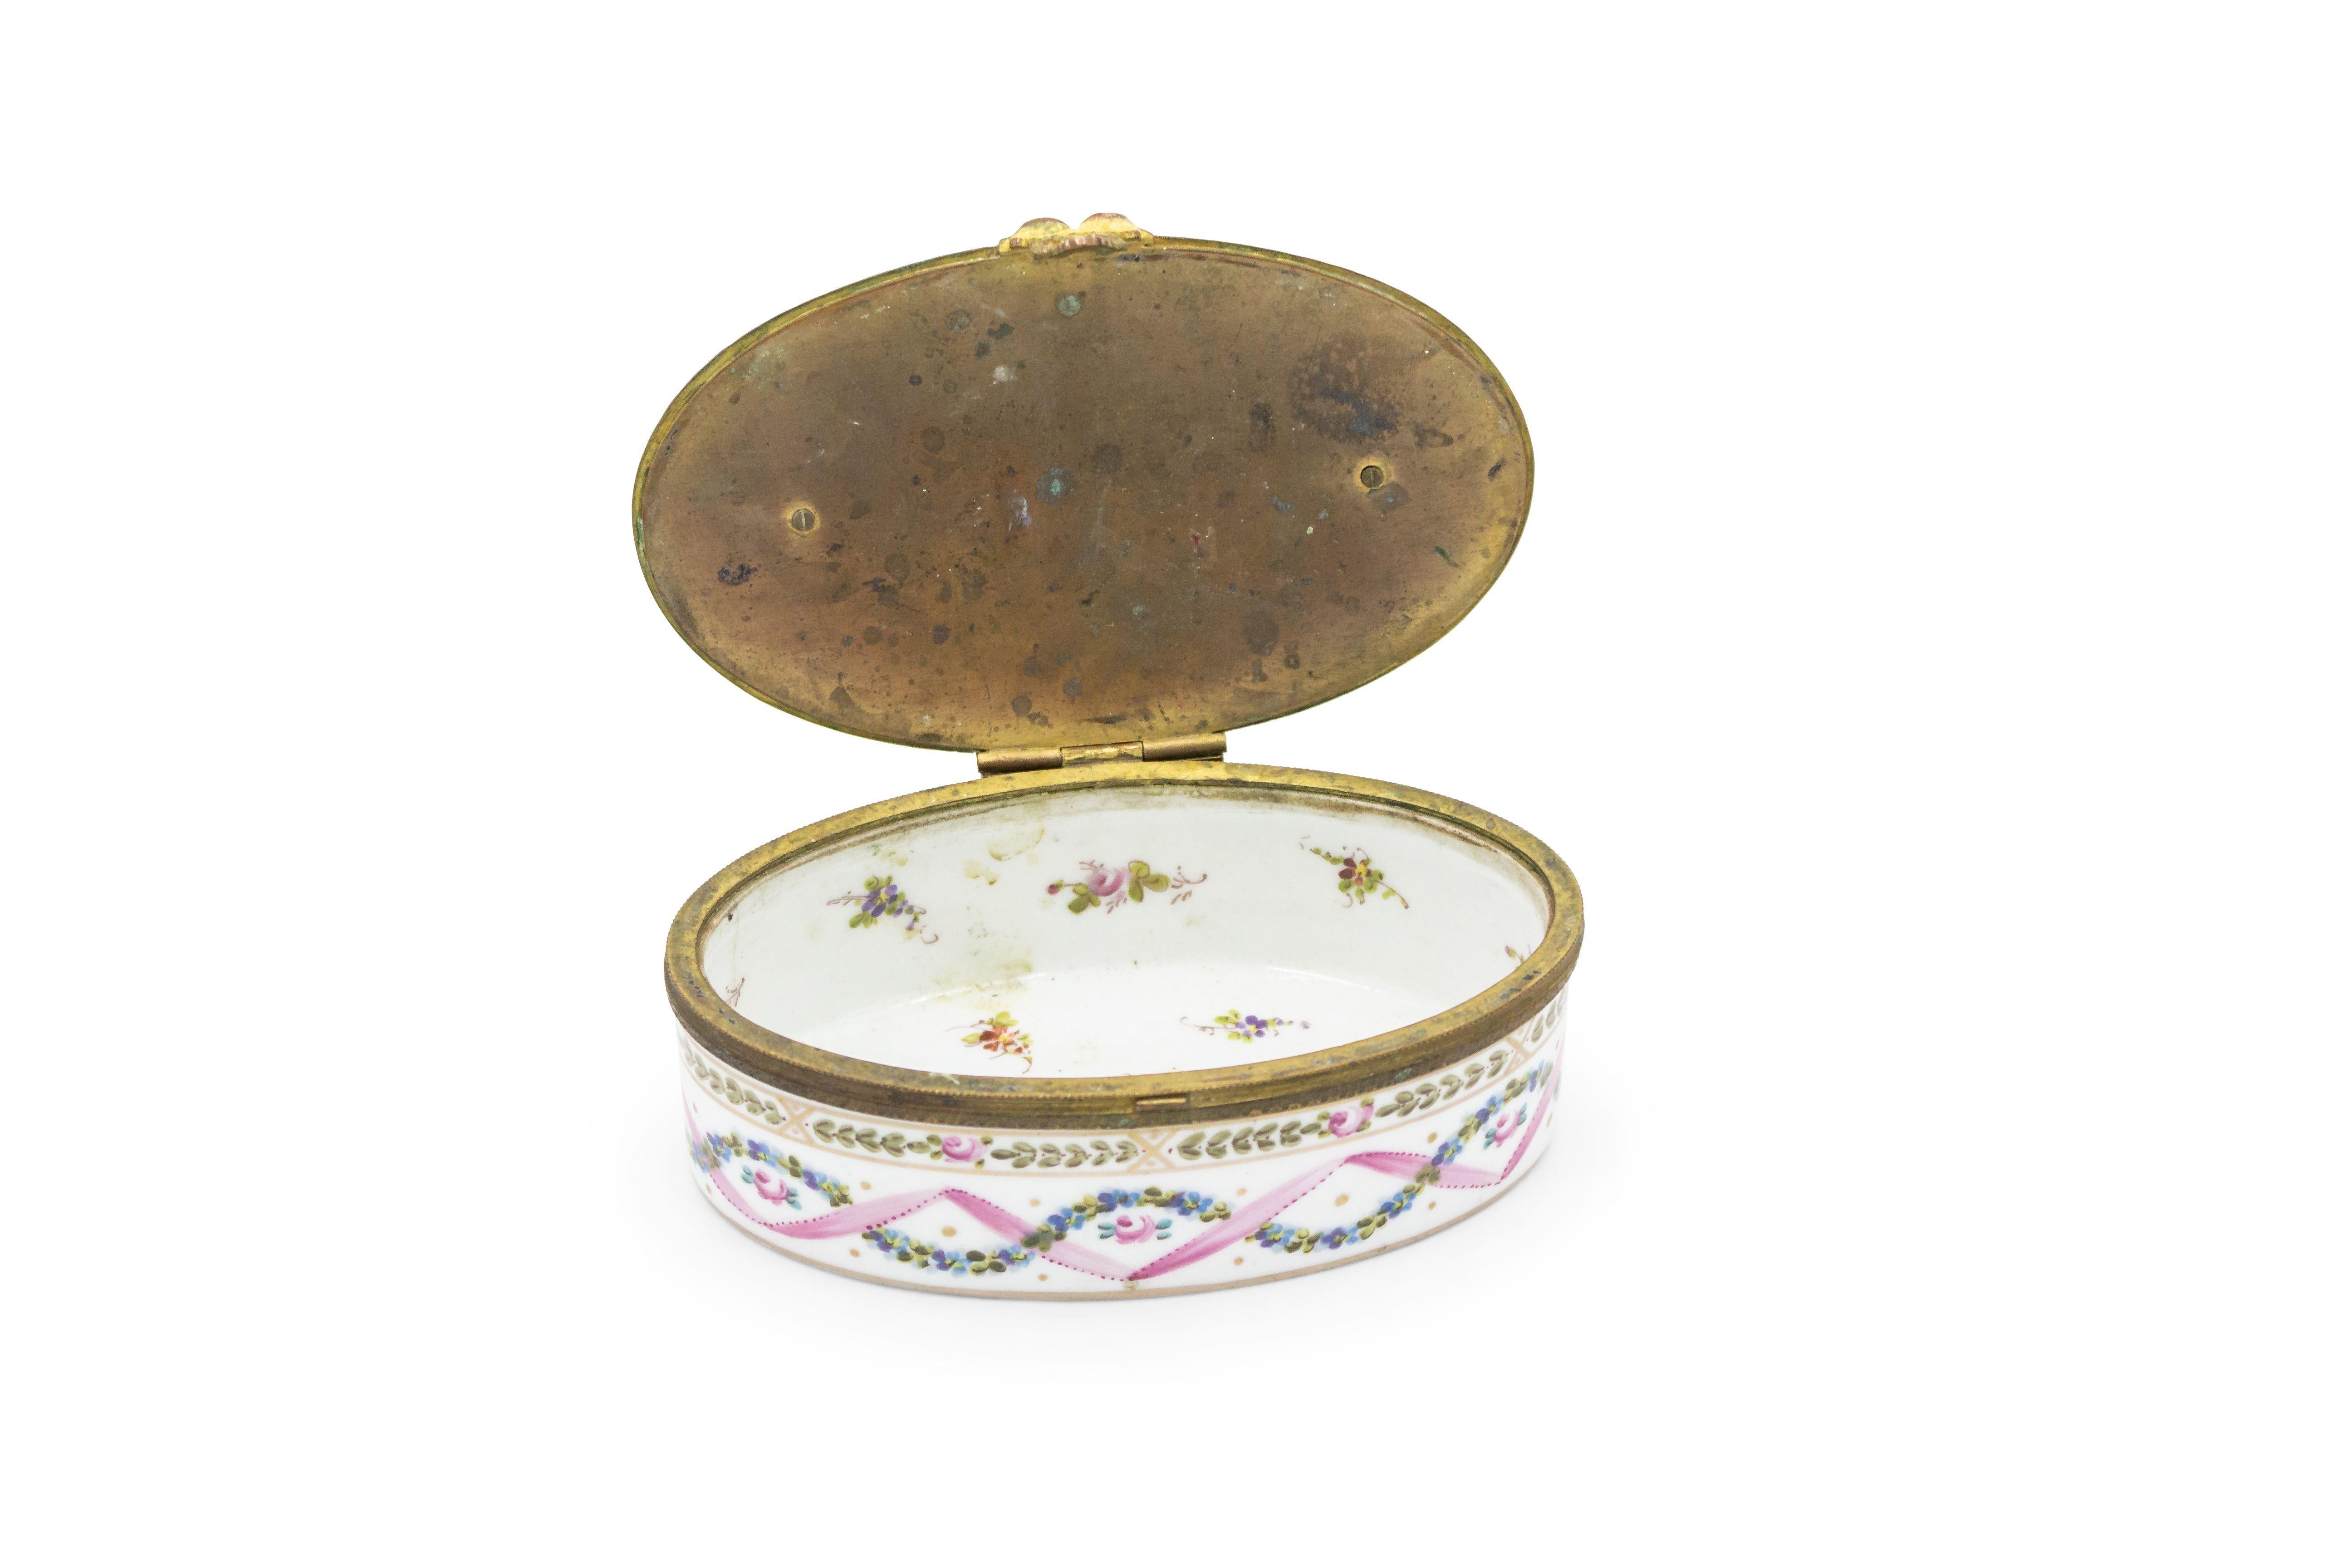 Petite boîte ovale en porcelaine de Sèvre de style Victorien (19ème siècle) avec couvercle en bronze et décor rose et blanc et intérieur avec des fleurs (signé sur le fond).
 